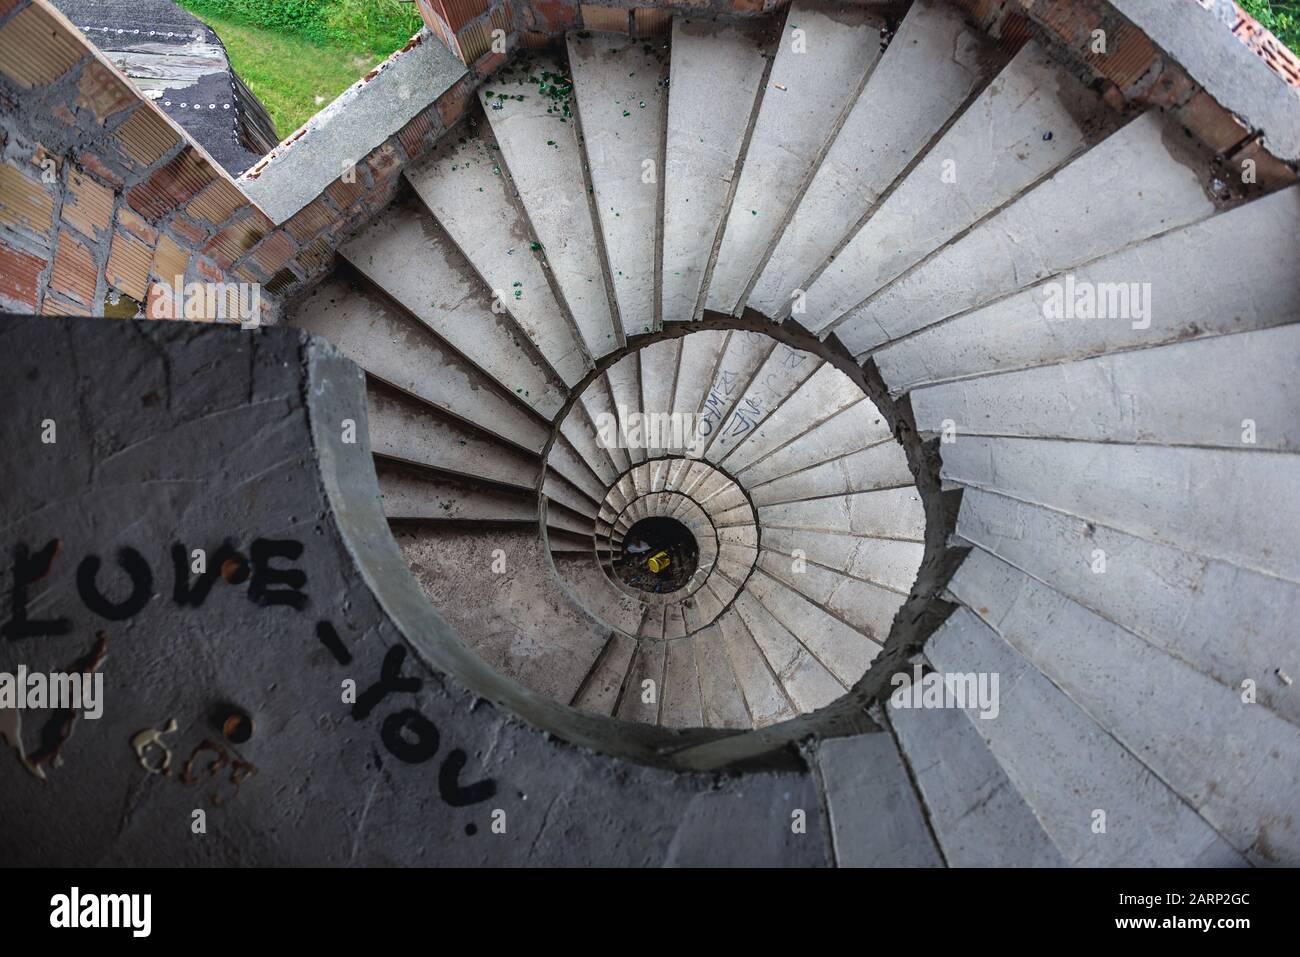 Geschwungene Treppe in einem Turm der unvollendete Schloss - inoffizielle Touristenattraktion in Lapalice Dorf, Kaschubei, Polen. Bau des Schlosses begann im Jahr 1979 Stockfoto